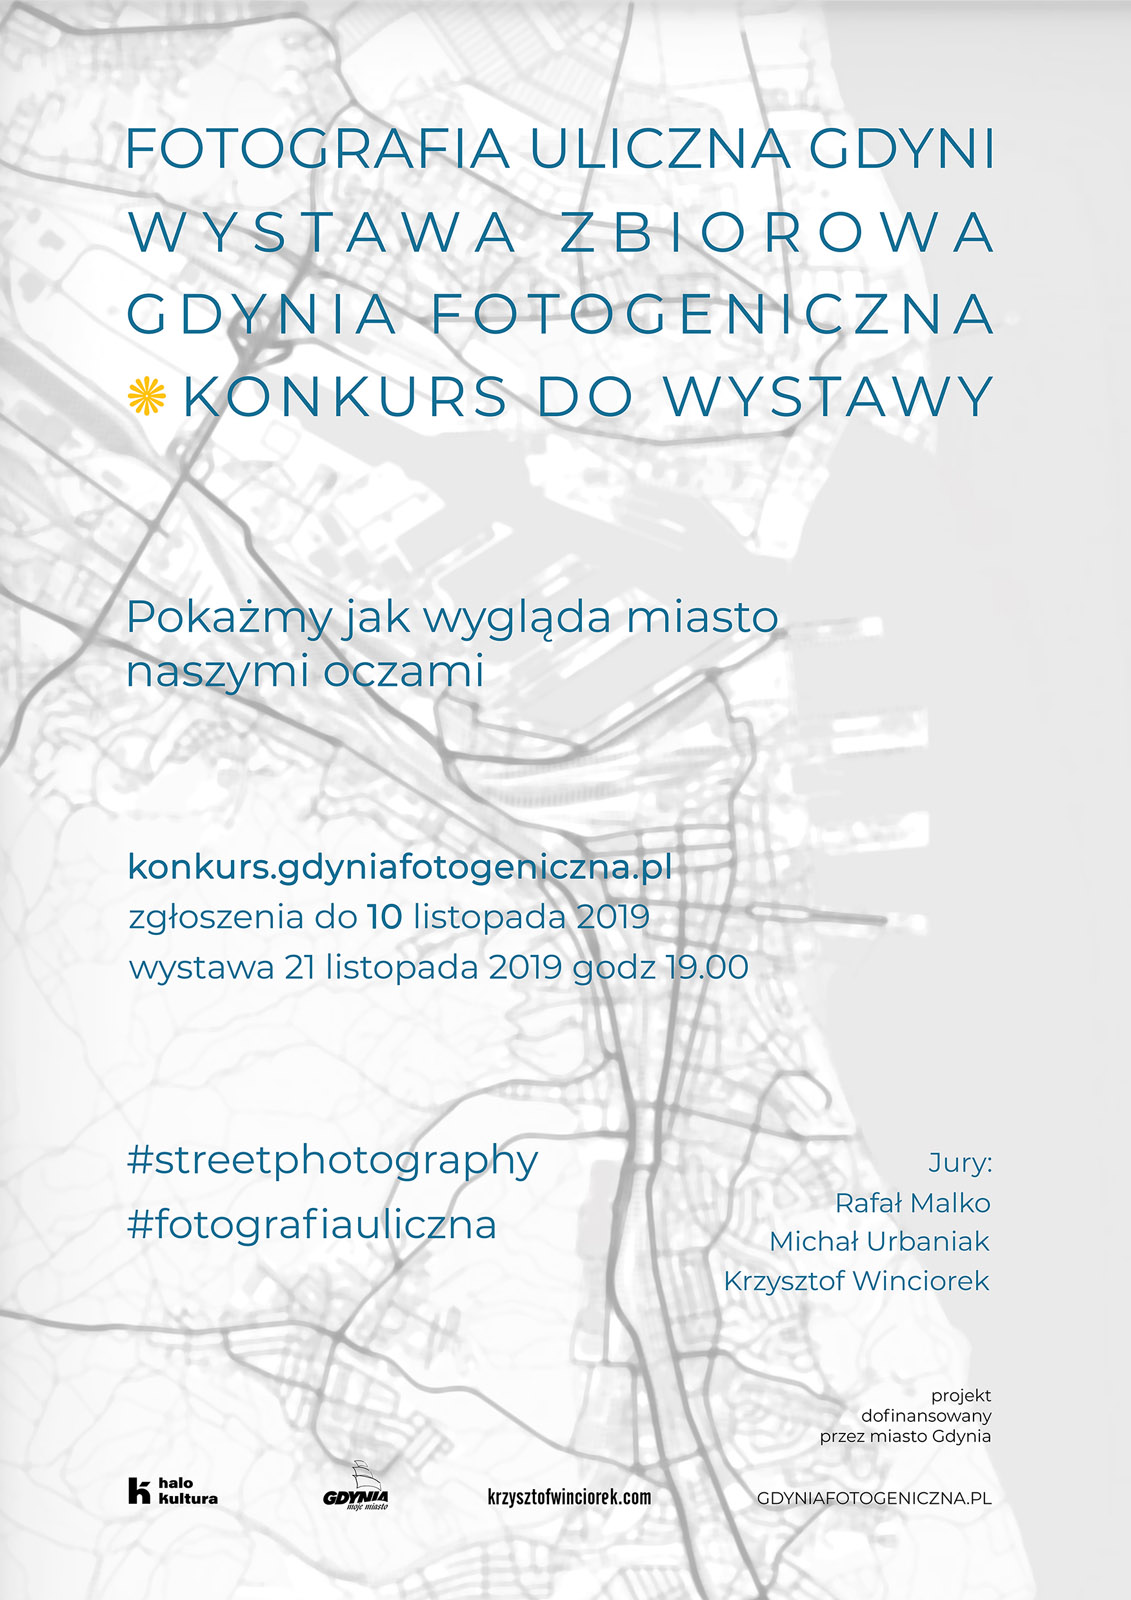 Gdynia Fotogeniczna - Konkurs i wystawa fotografii ulicznej Gdyni - I edycja - Wernisaż, Halo Kultura, Gdynia 21.11.2019